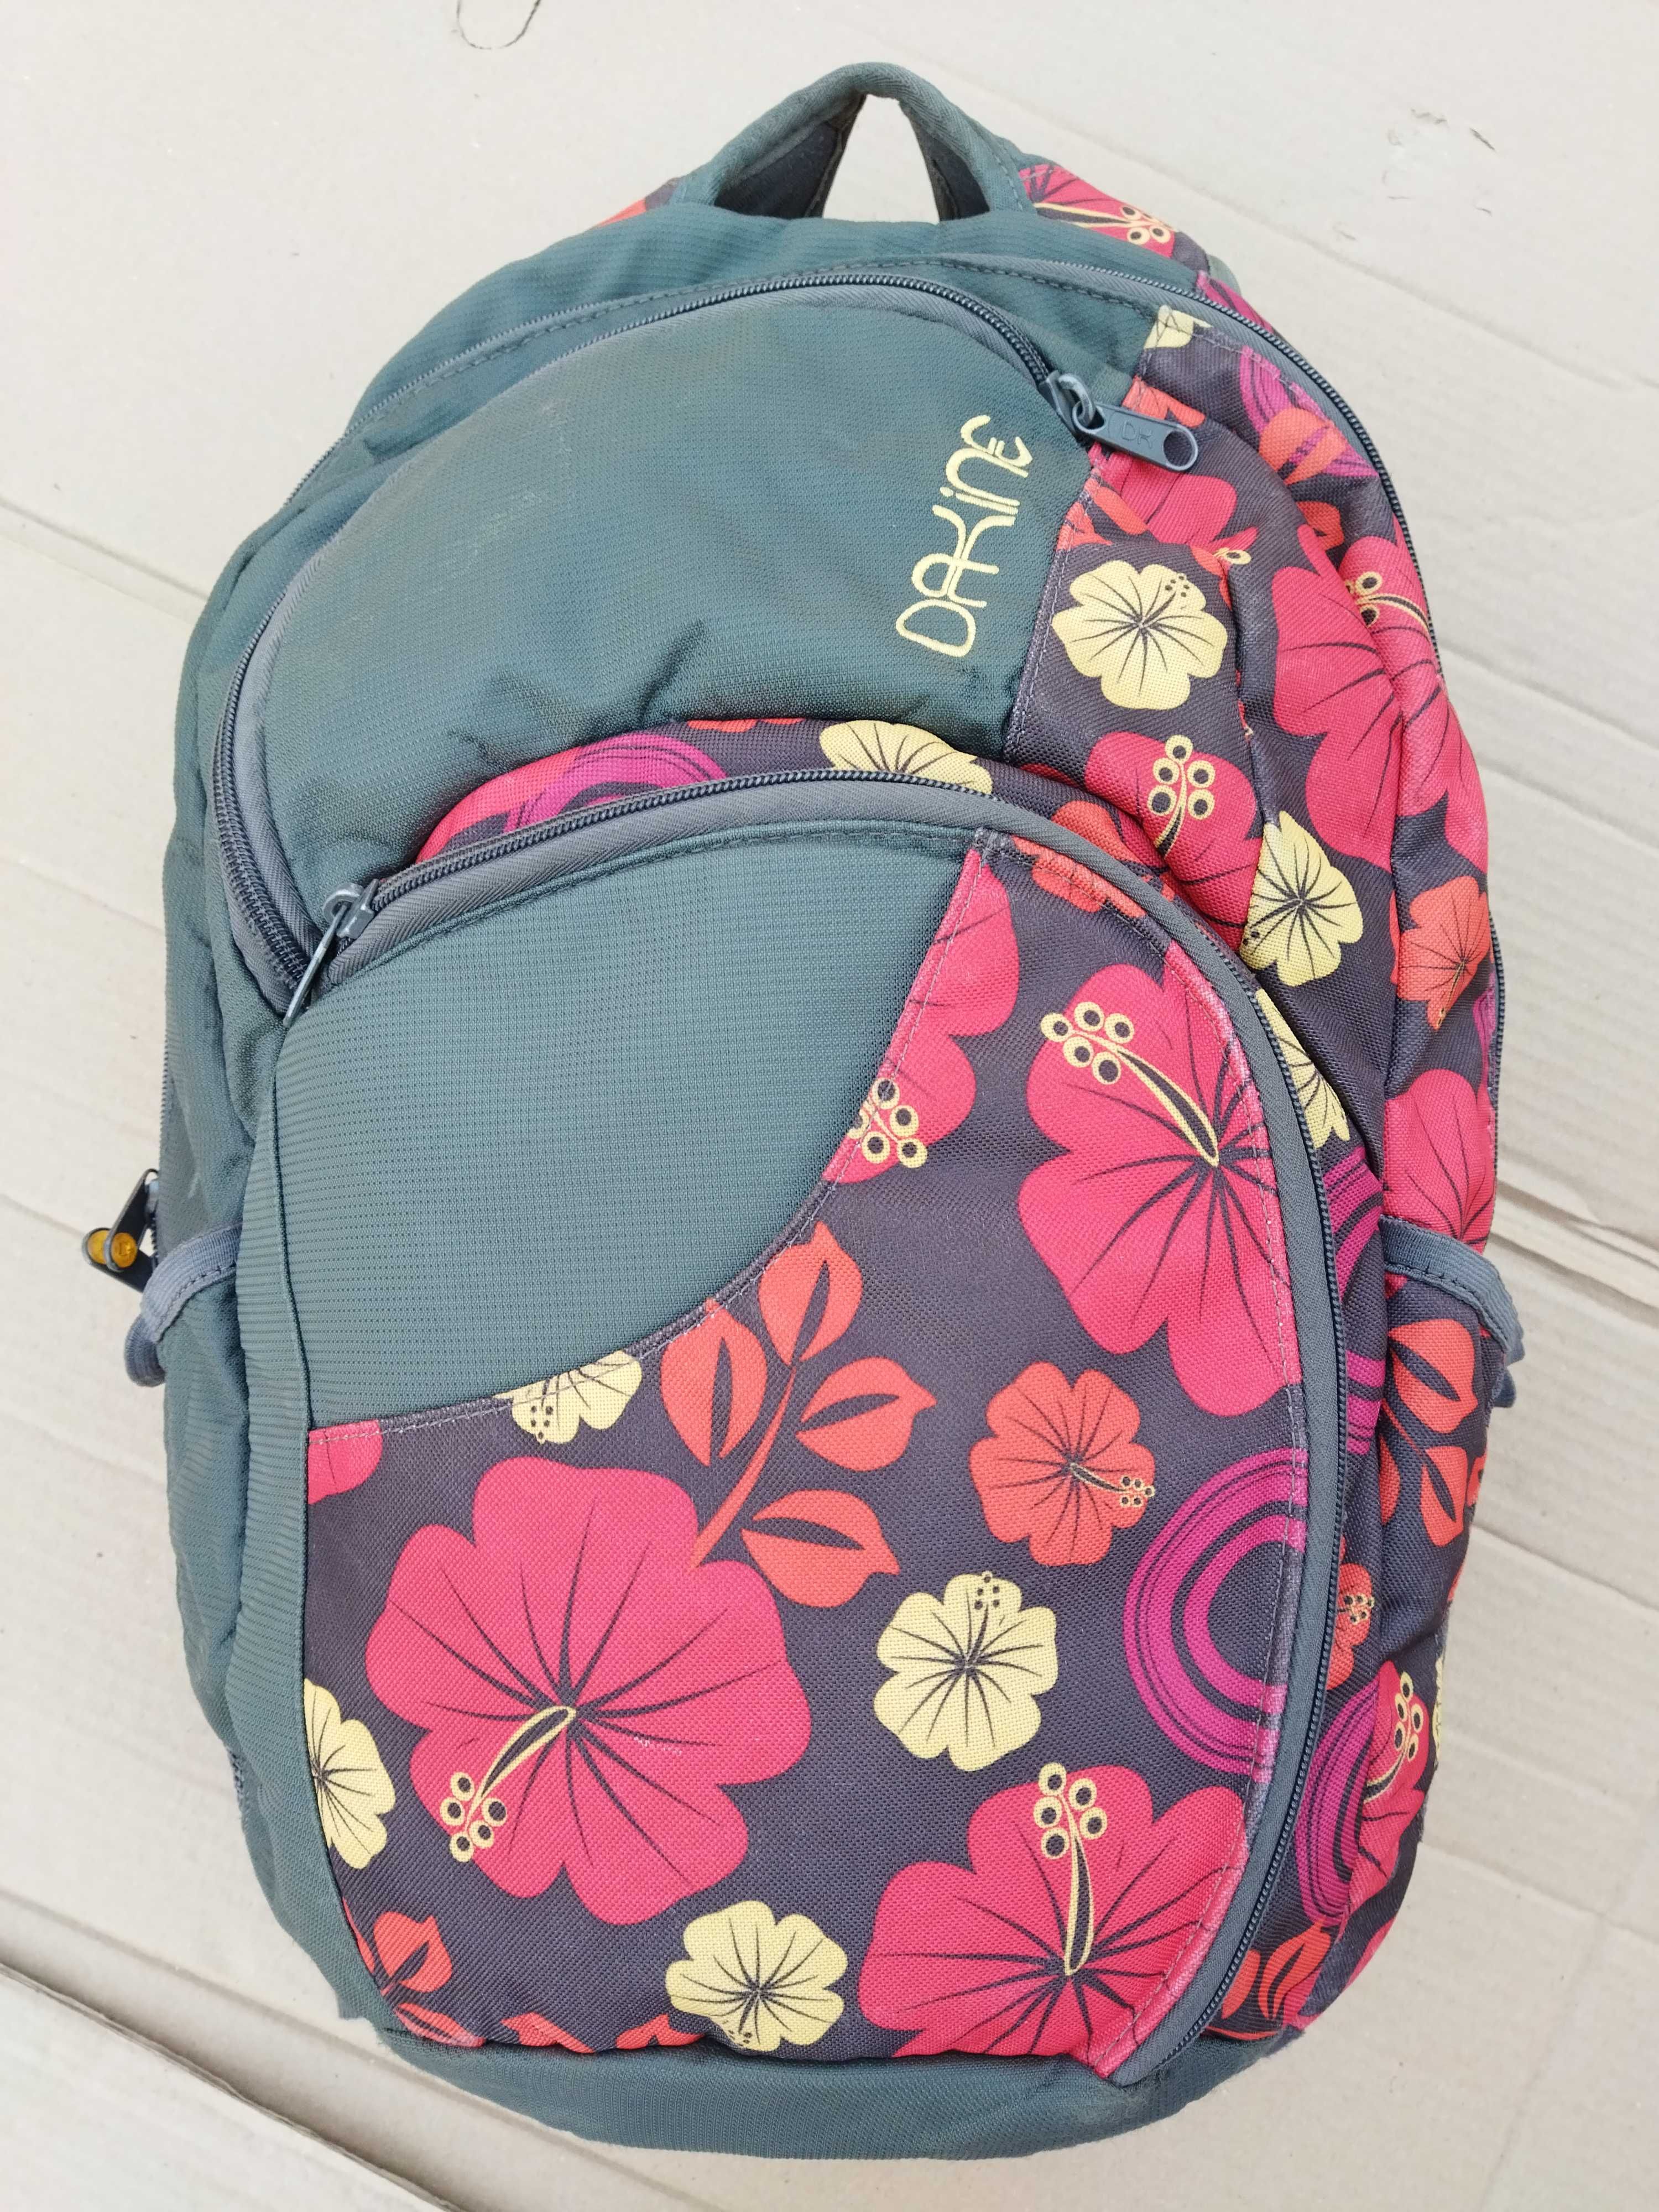 25л - женский пляжный рюкзак Dakine Oceana